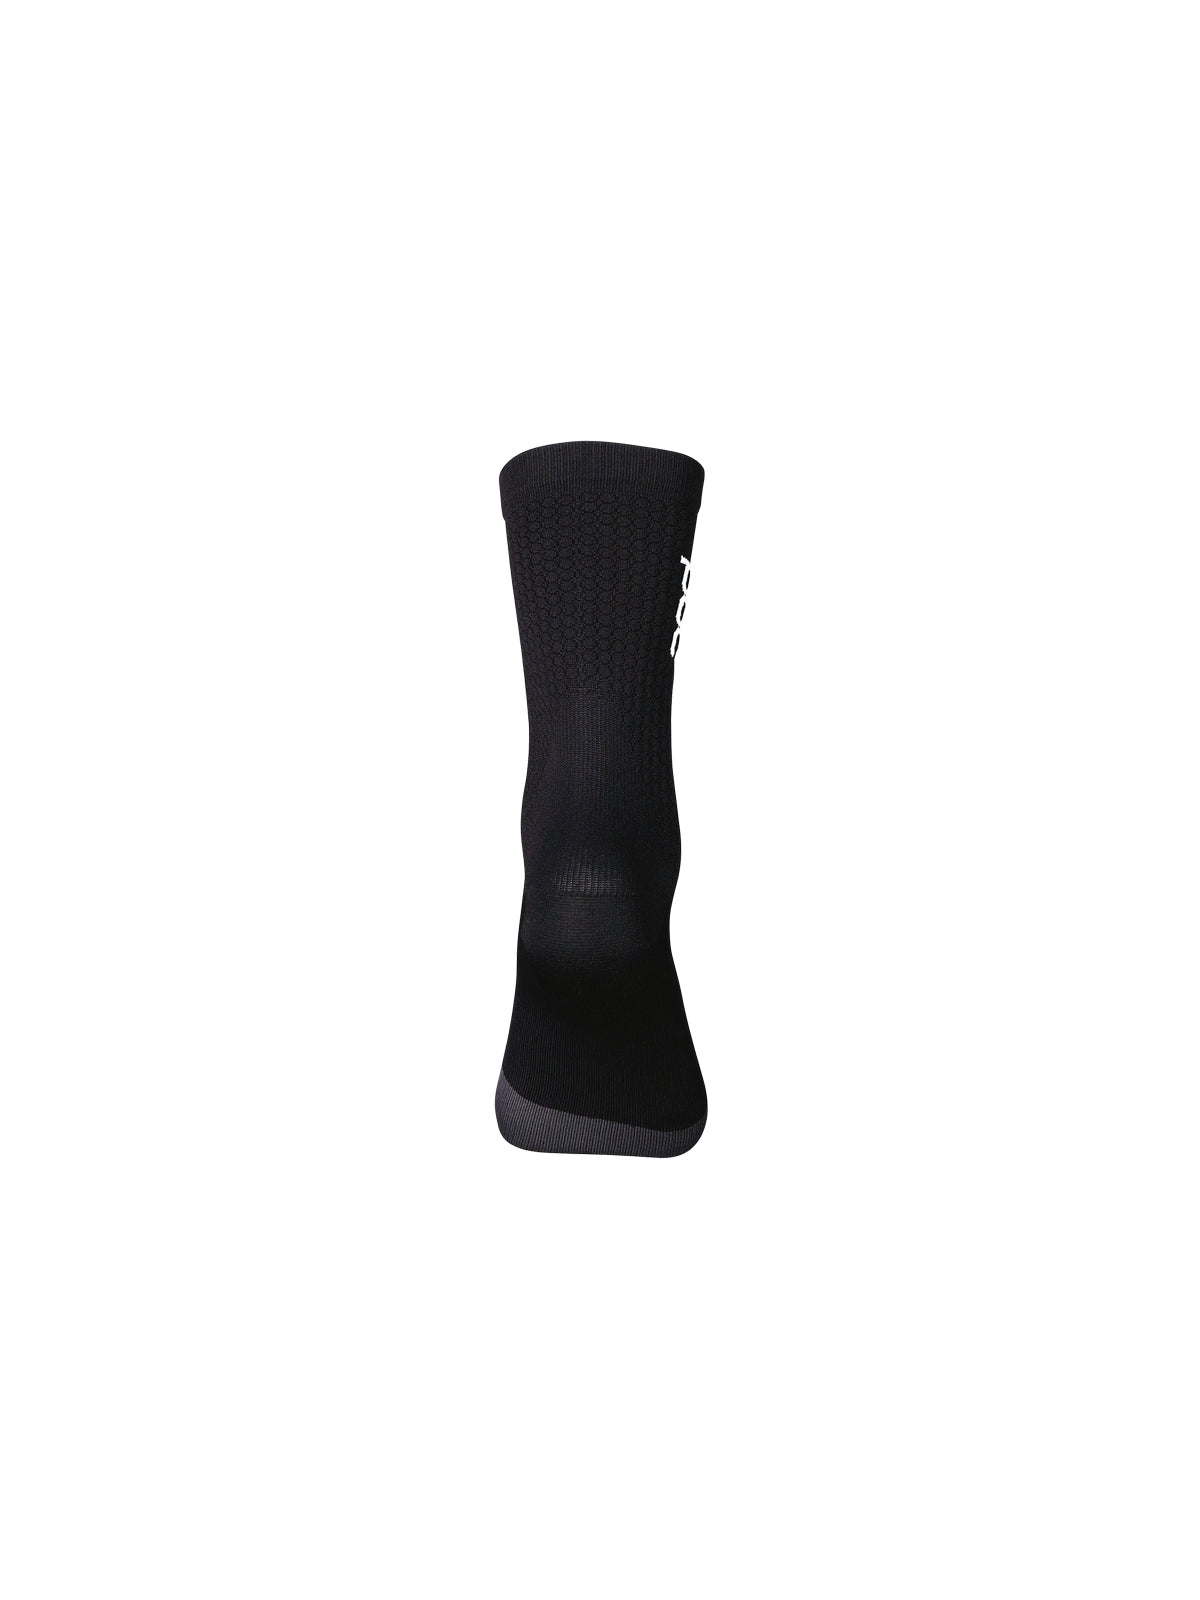 Skarpety rowerowe POC Flair Sock Mid - Ur. Black/Sylvanite Grey